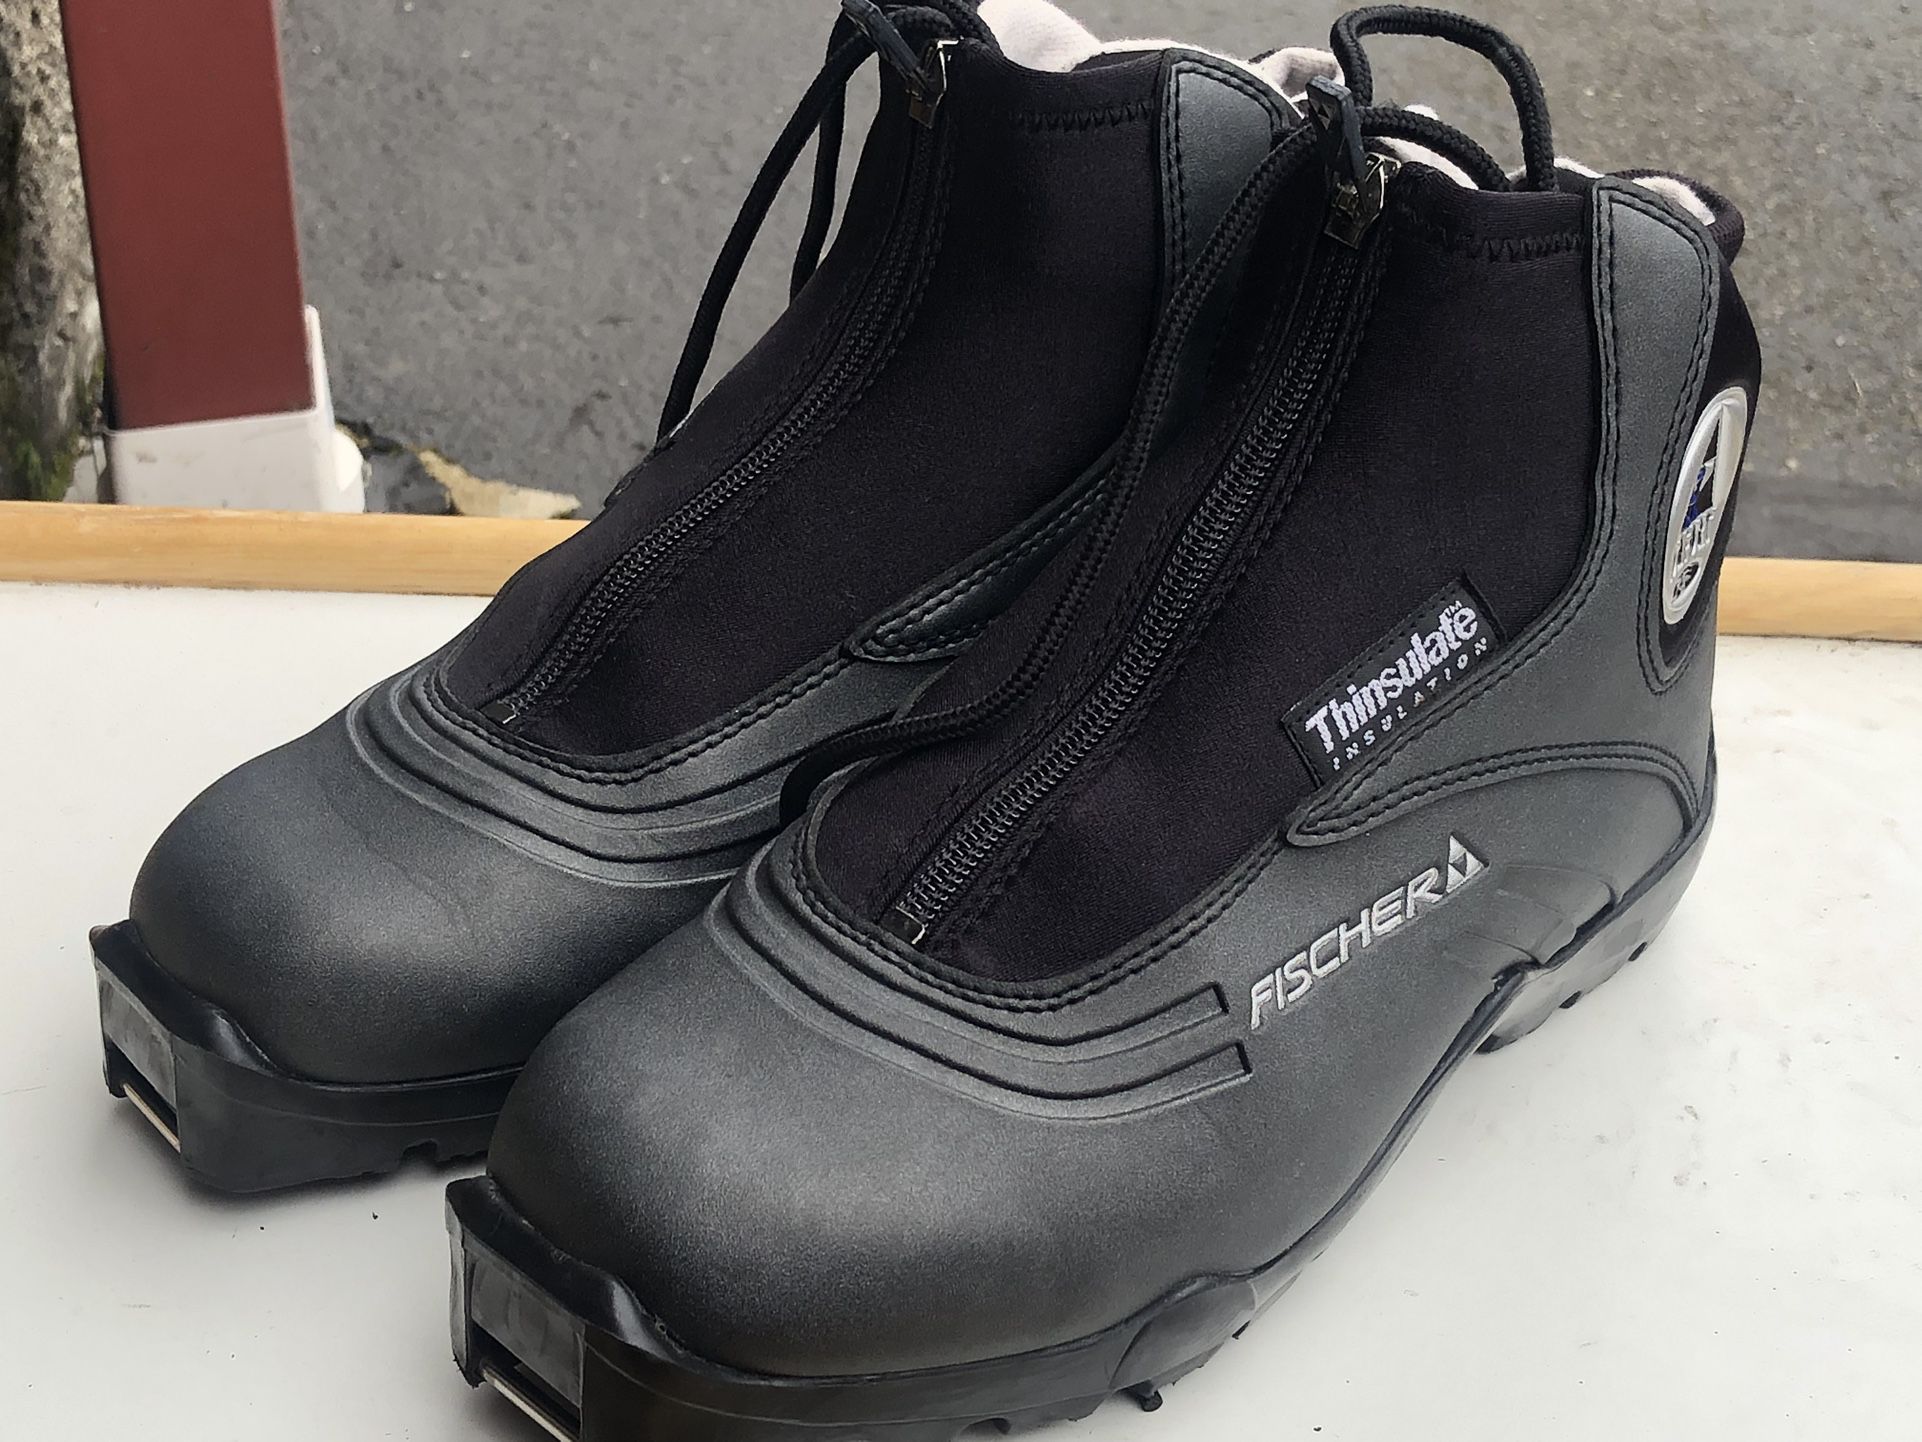 Fischer SL Comfort RF Men's Black Nordic Cross Country Ski Boots Size EU42 US9